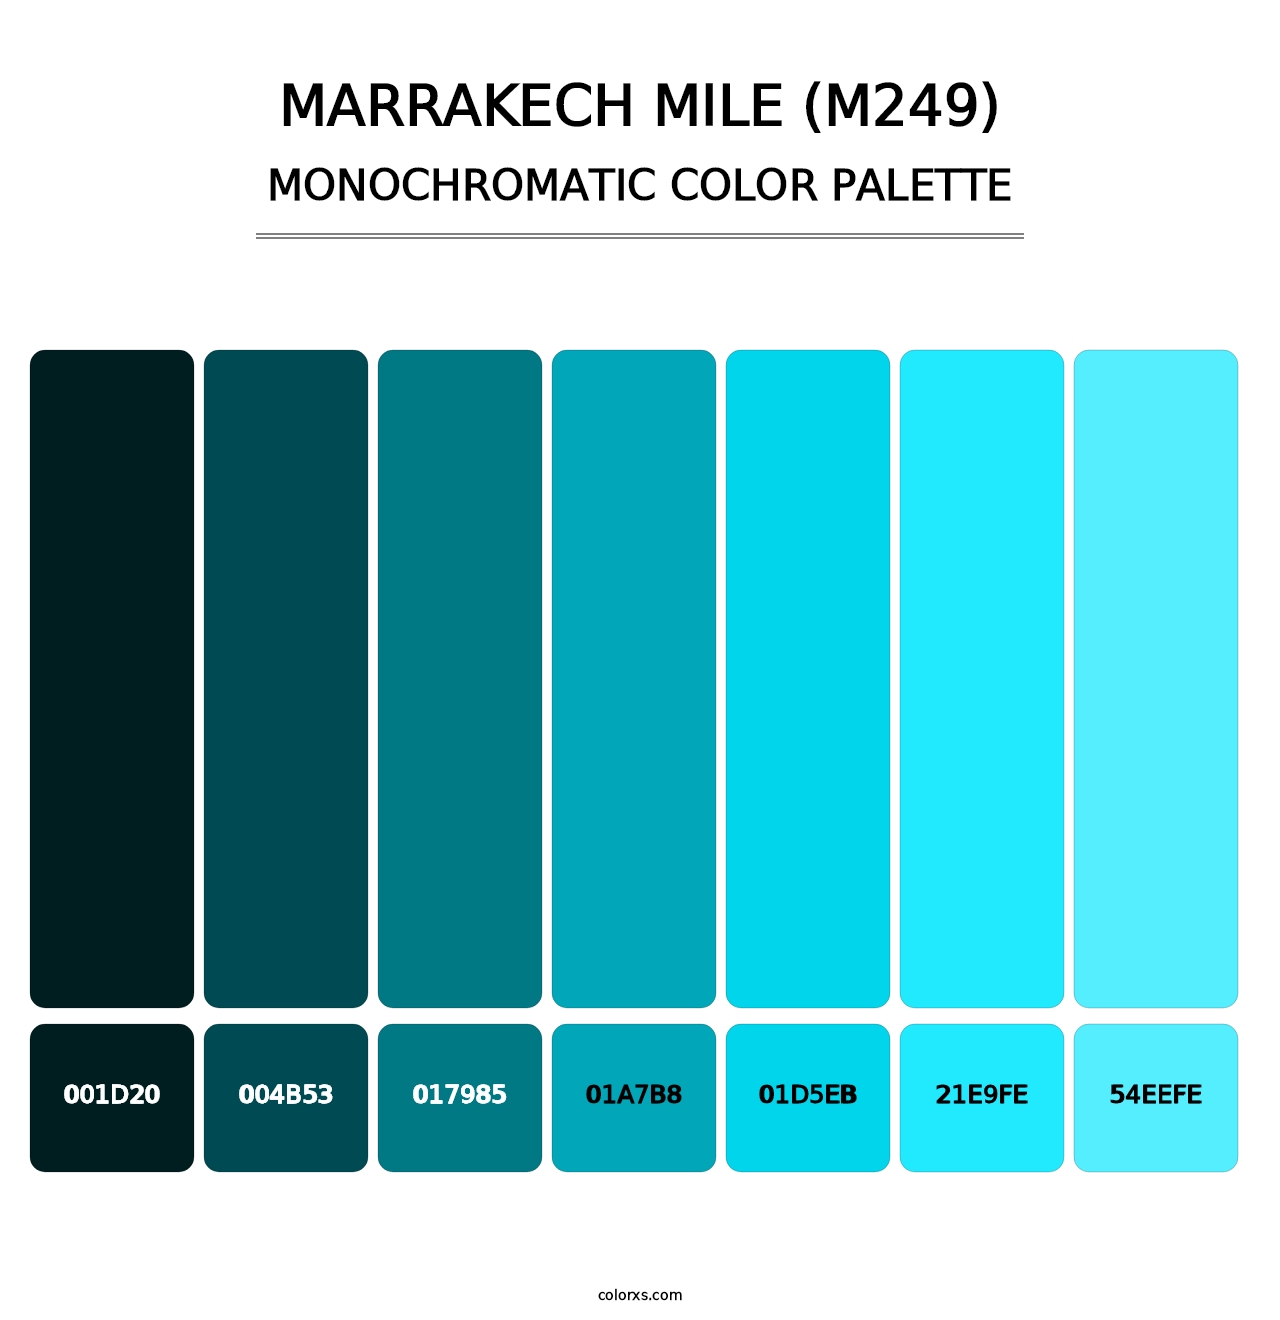 Marrakech Mile (M249) - Monochromatic Color Palette